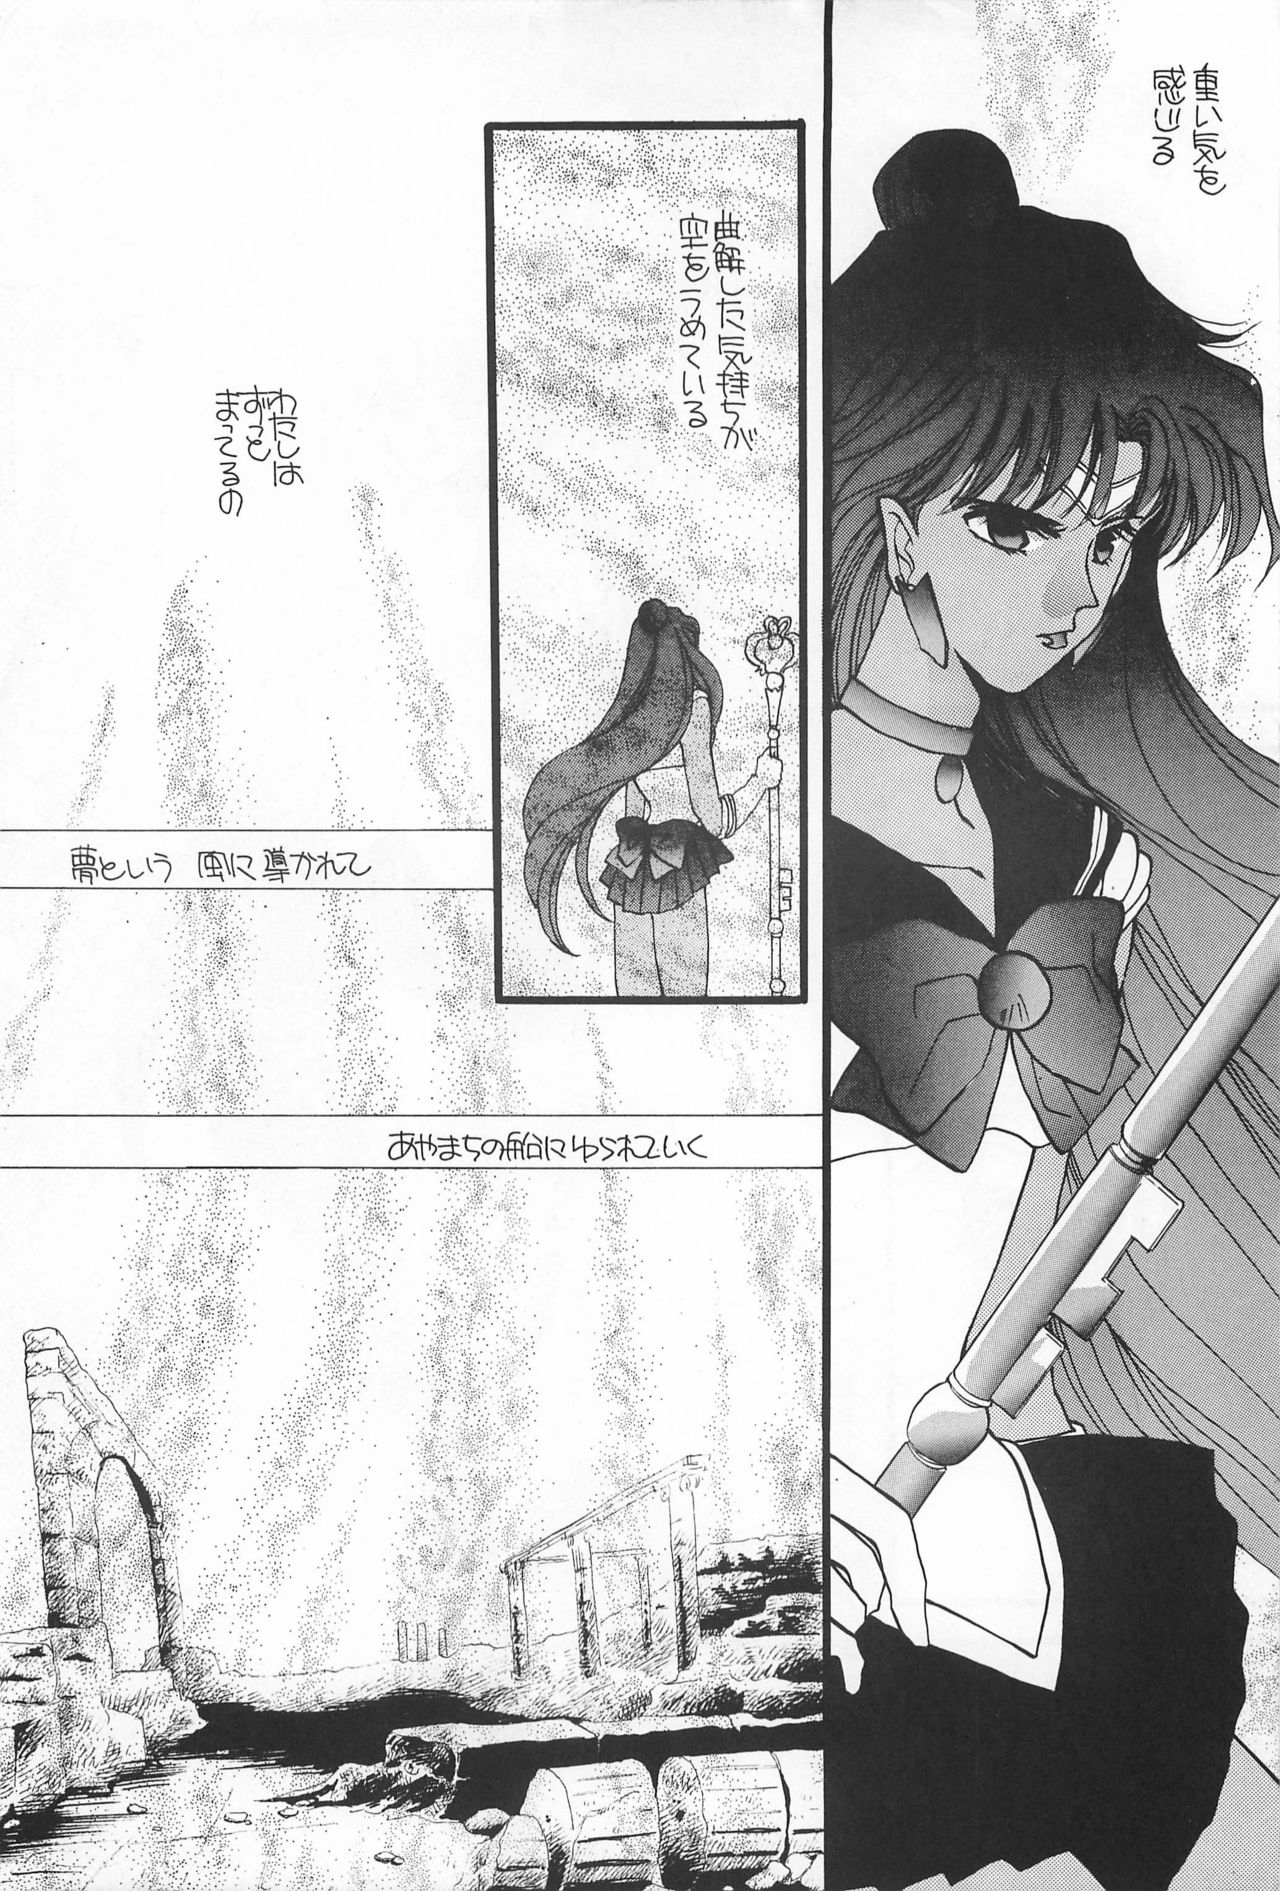 [Hello World (Muttri Moony)] Kaze no You ni Yume no You ni - Sailor Moon Collection (Sailor Moon) 97